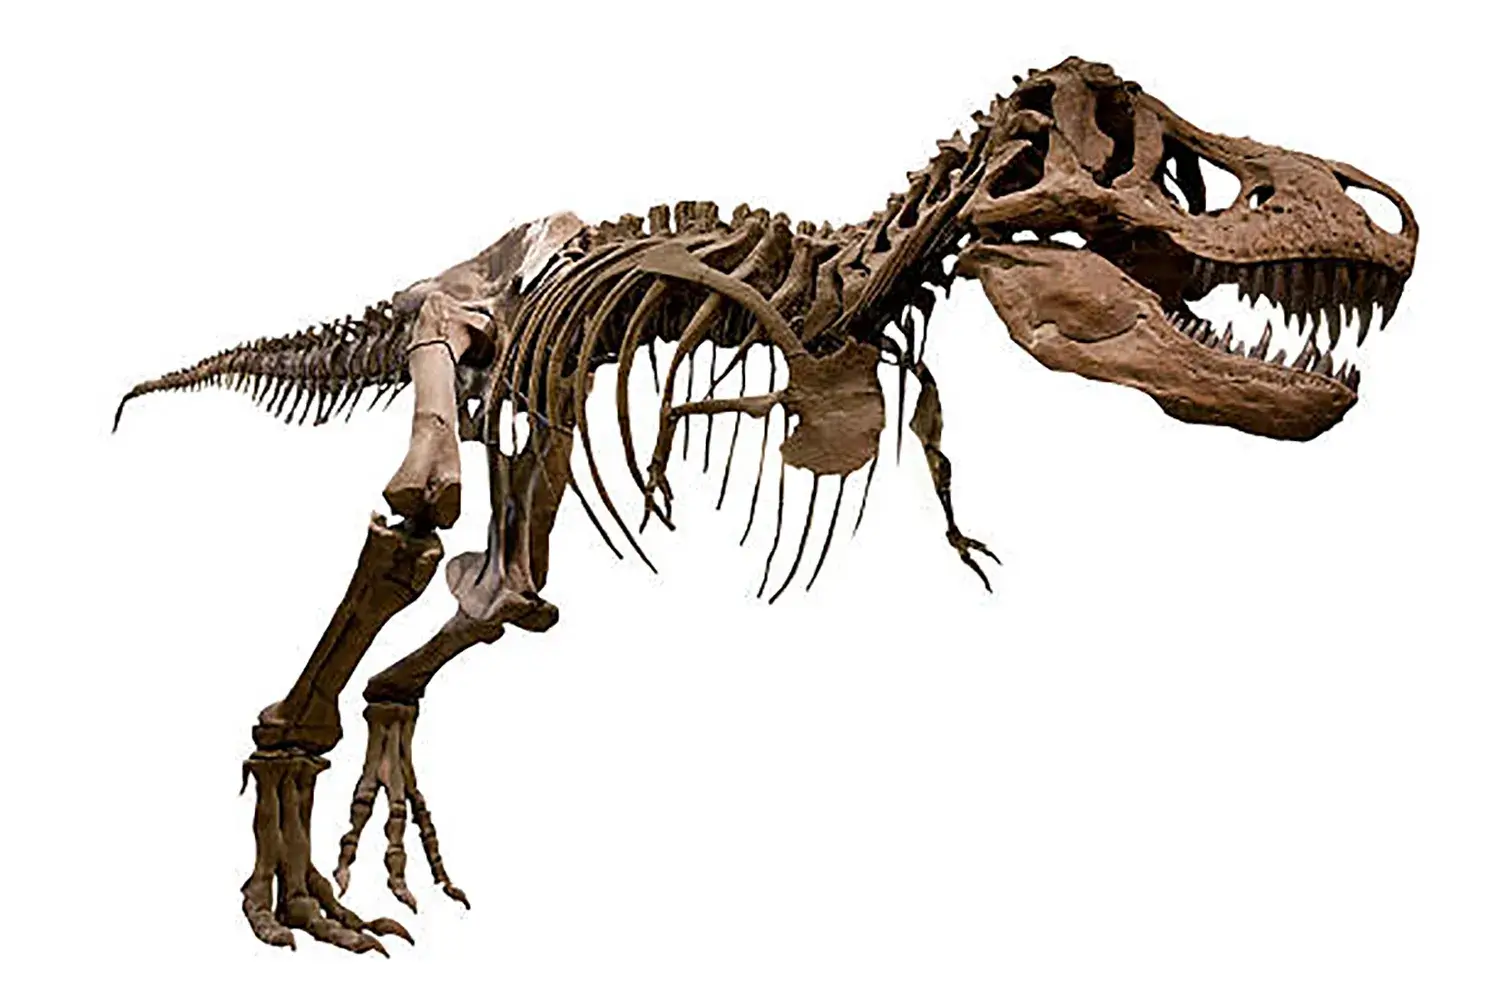 ティラノサウルスの化石に残っていたものは次のうちどれ？